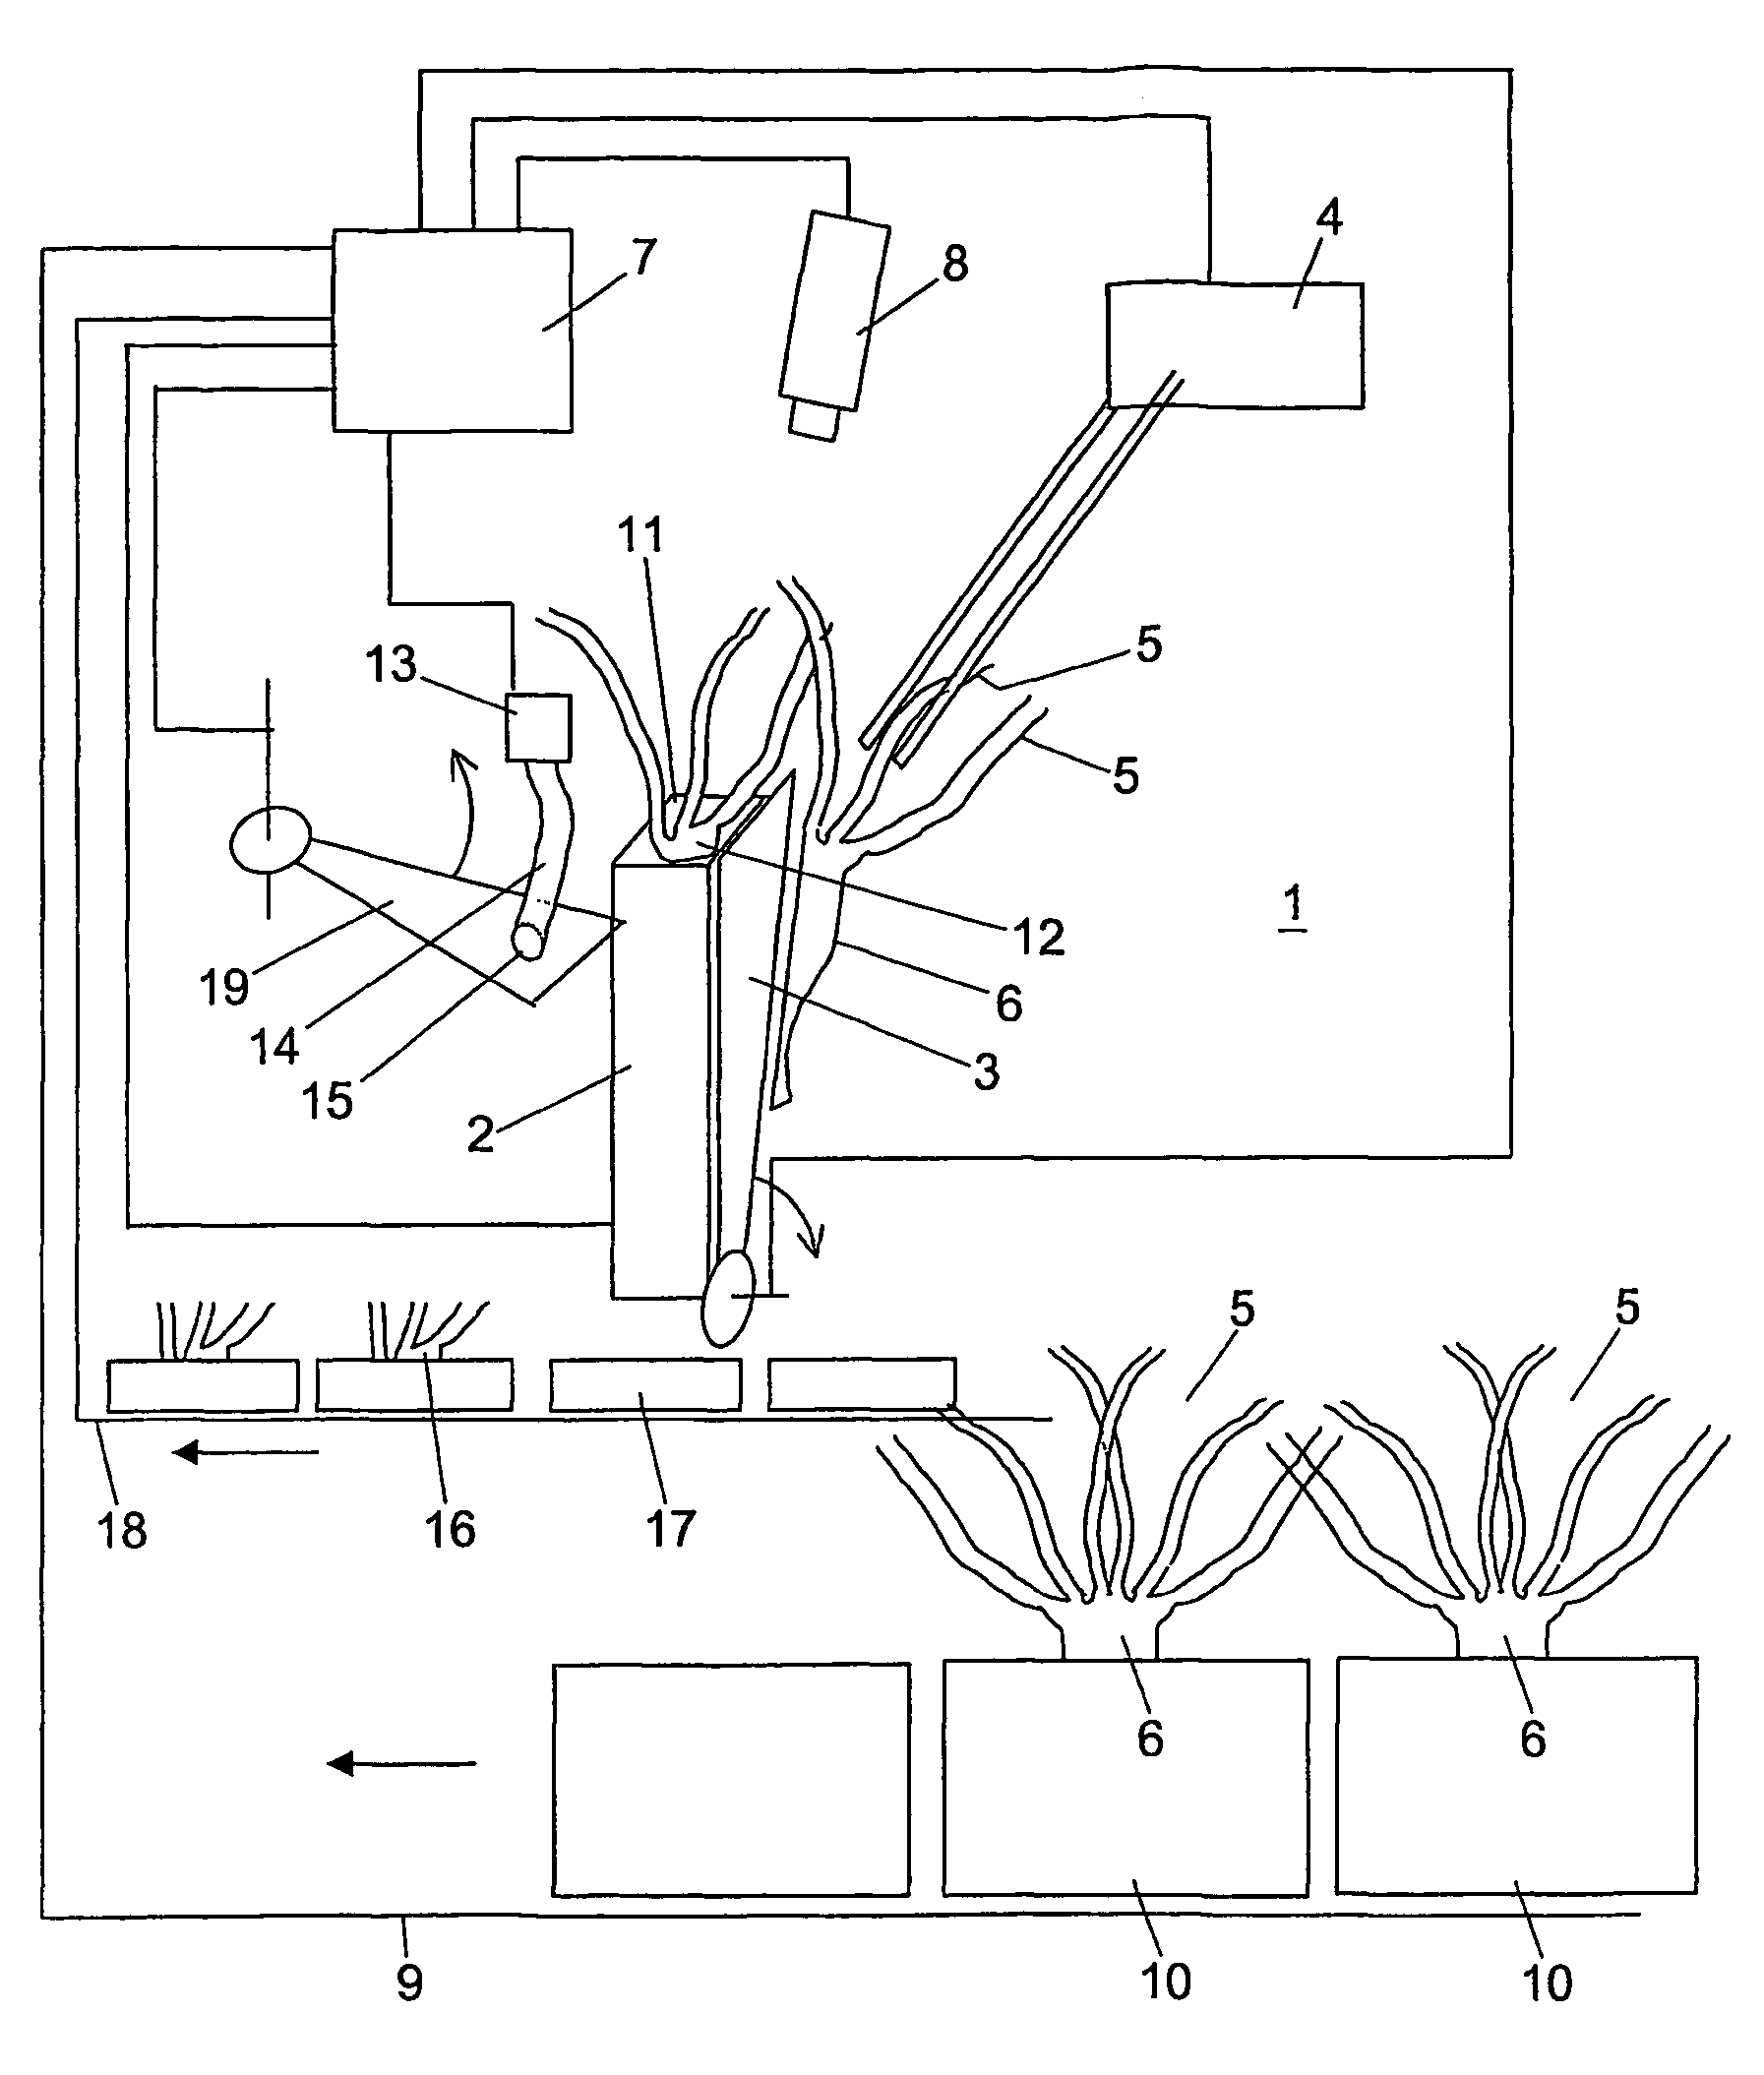 Method for separating rosette plants